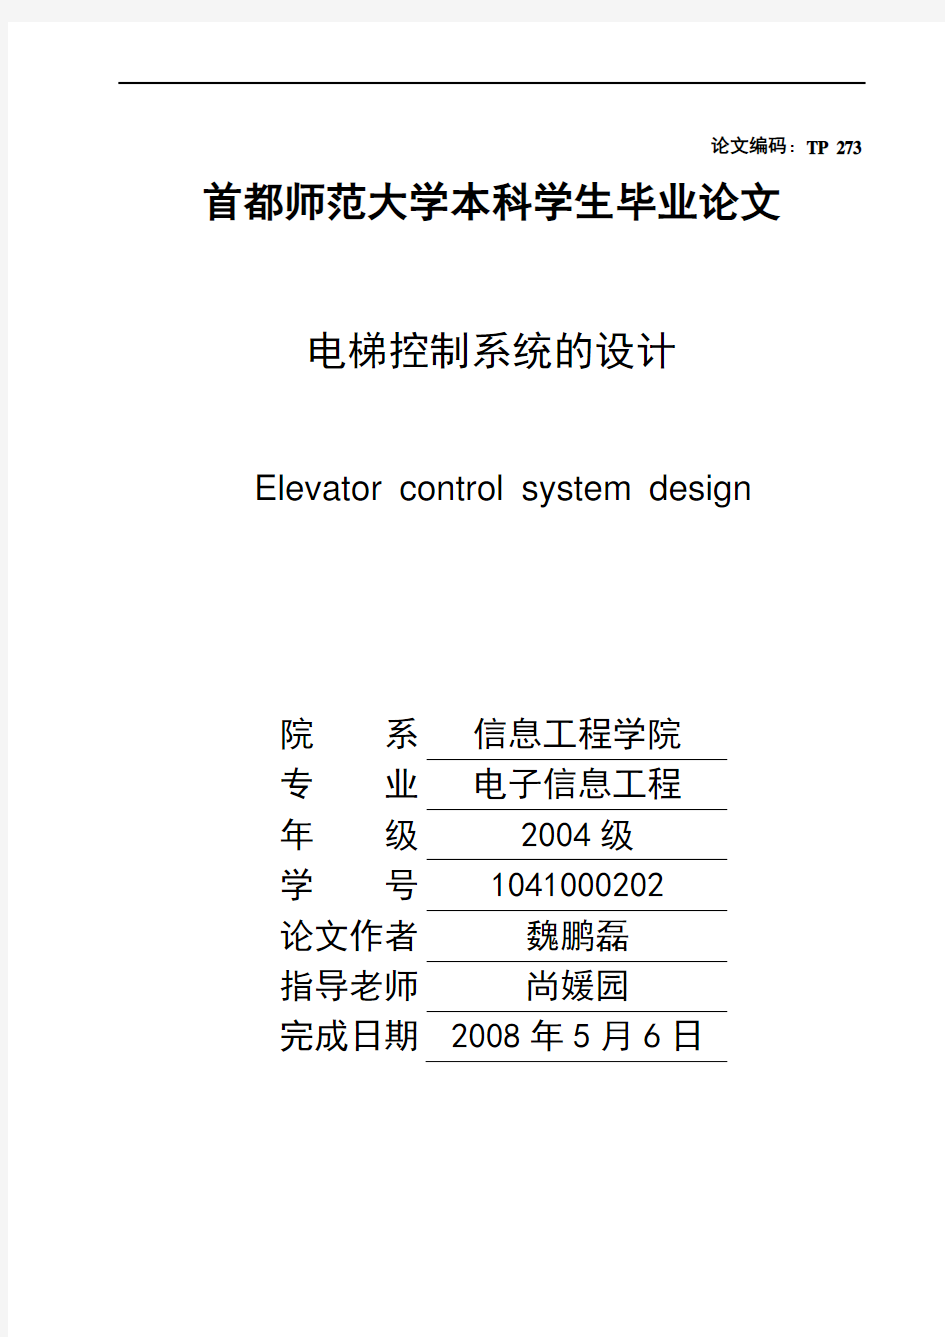 电梯控制系统的设计